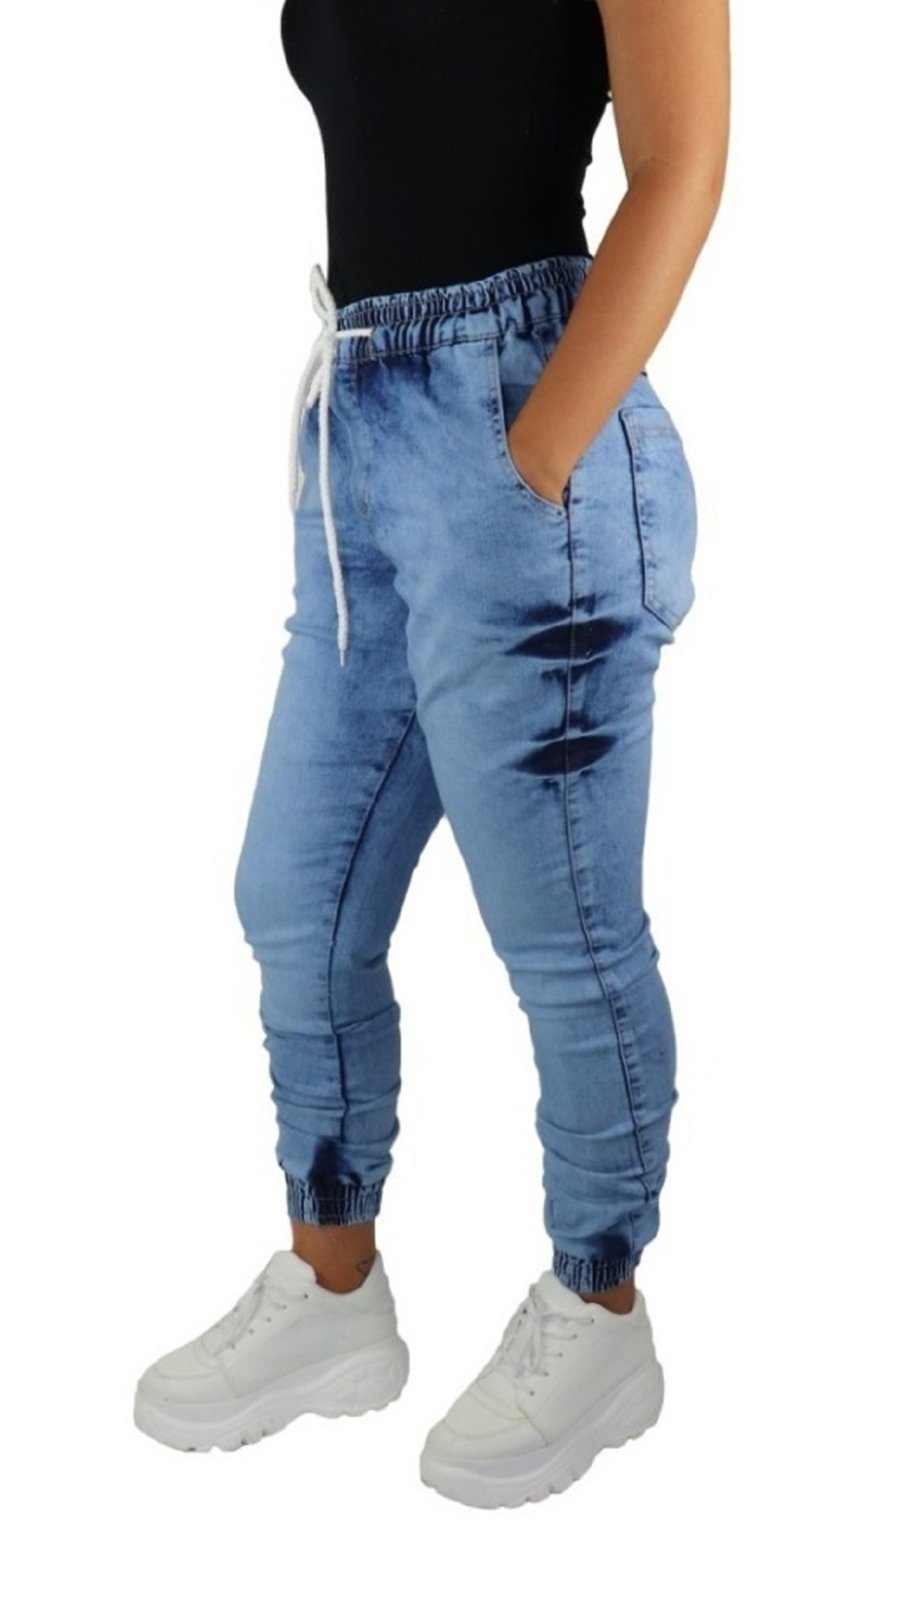 calça jeans com elastico feminina